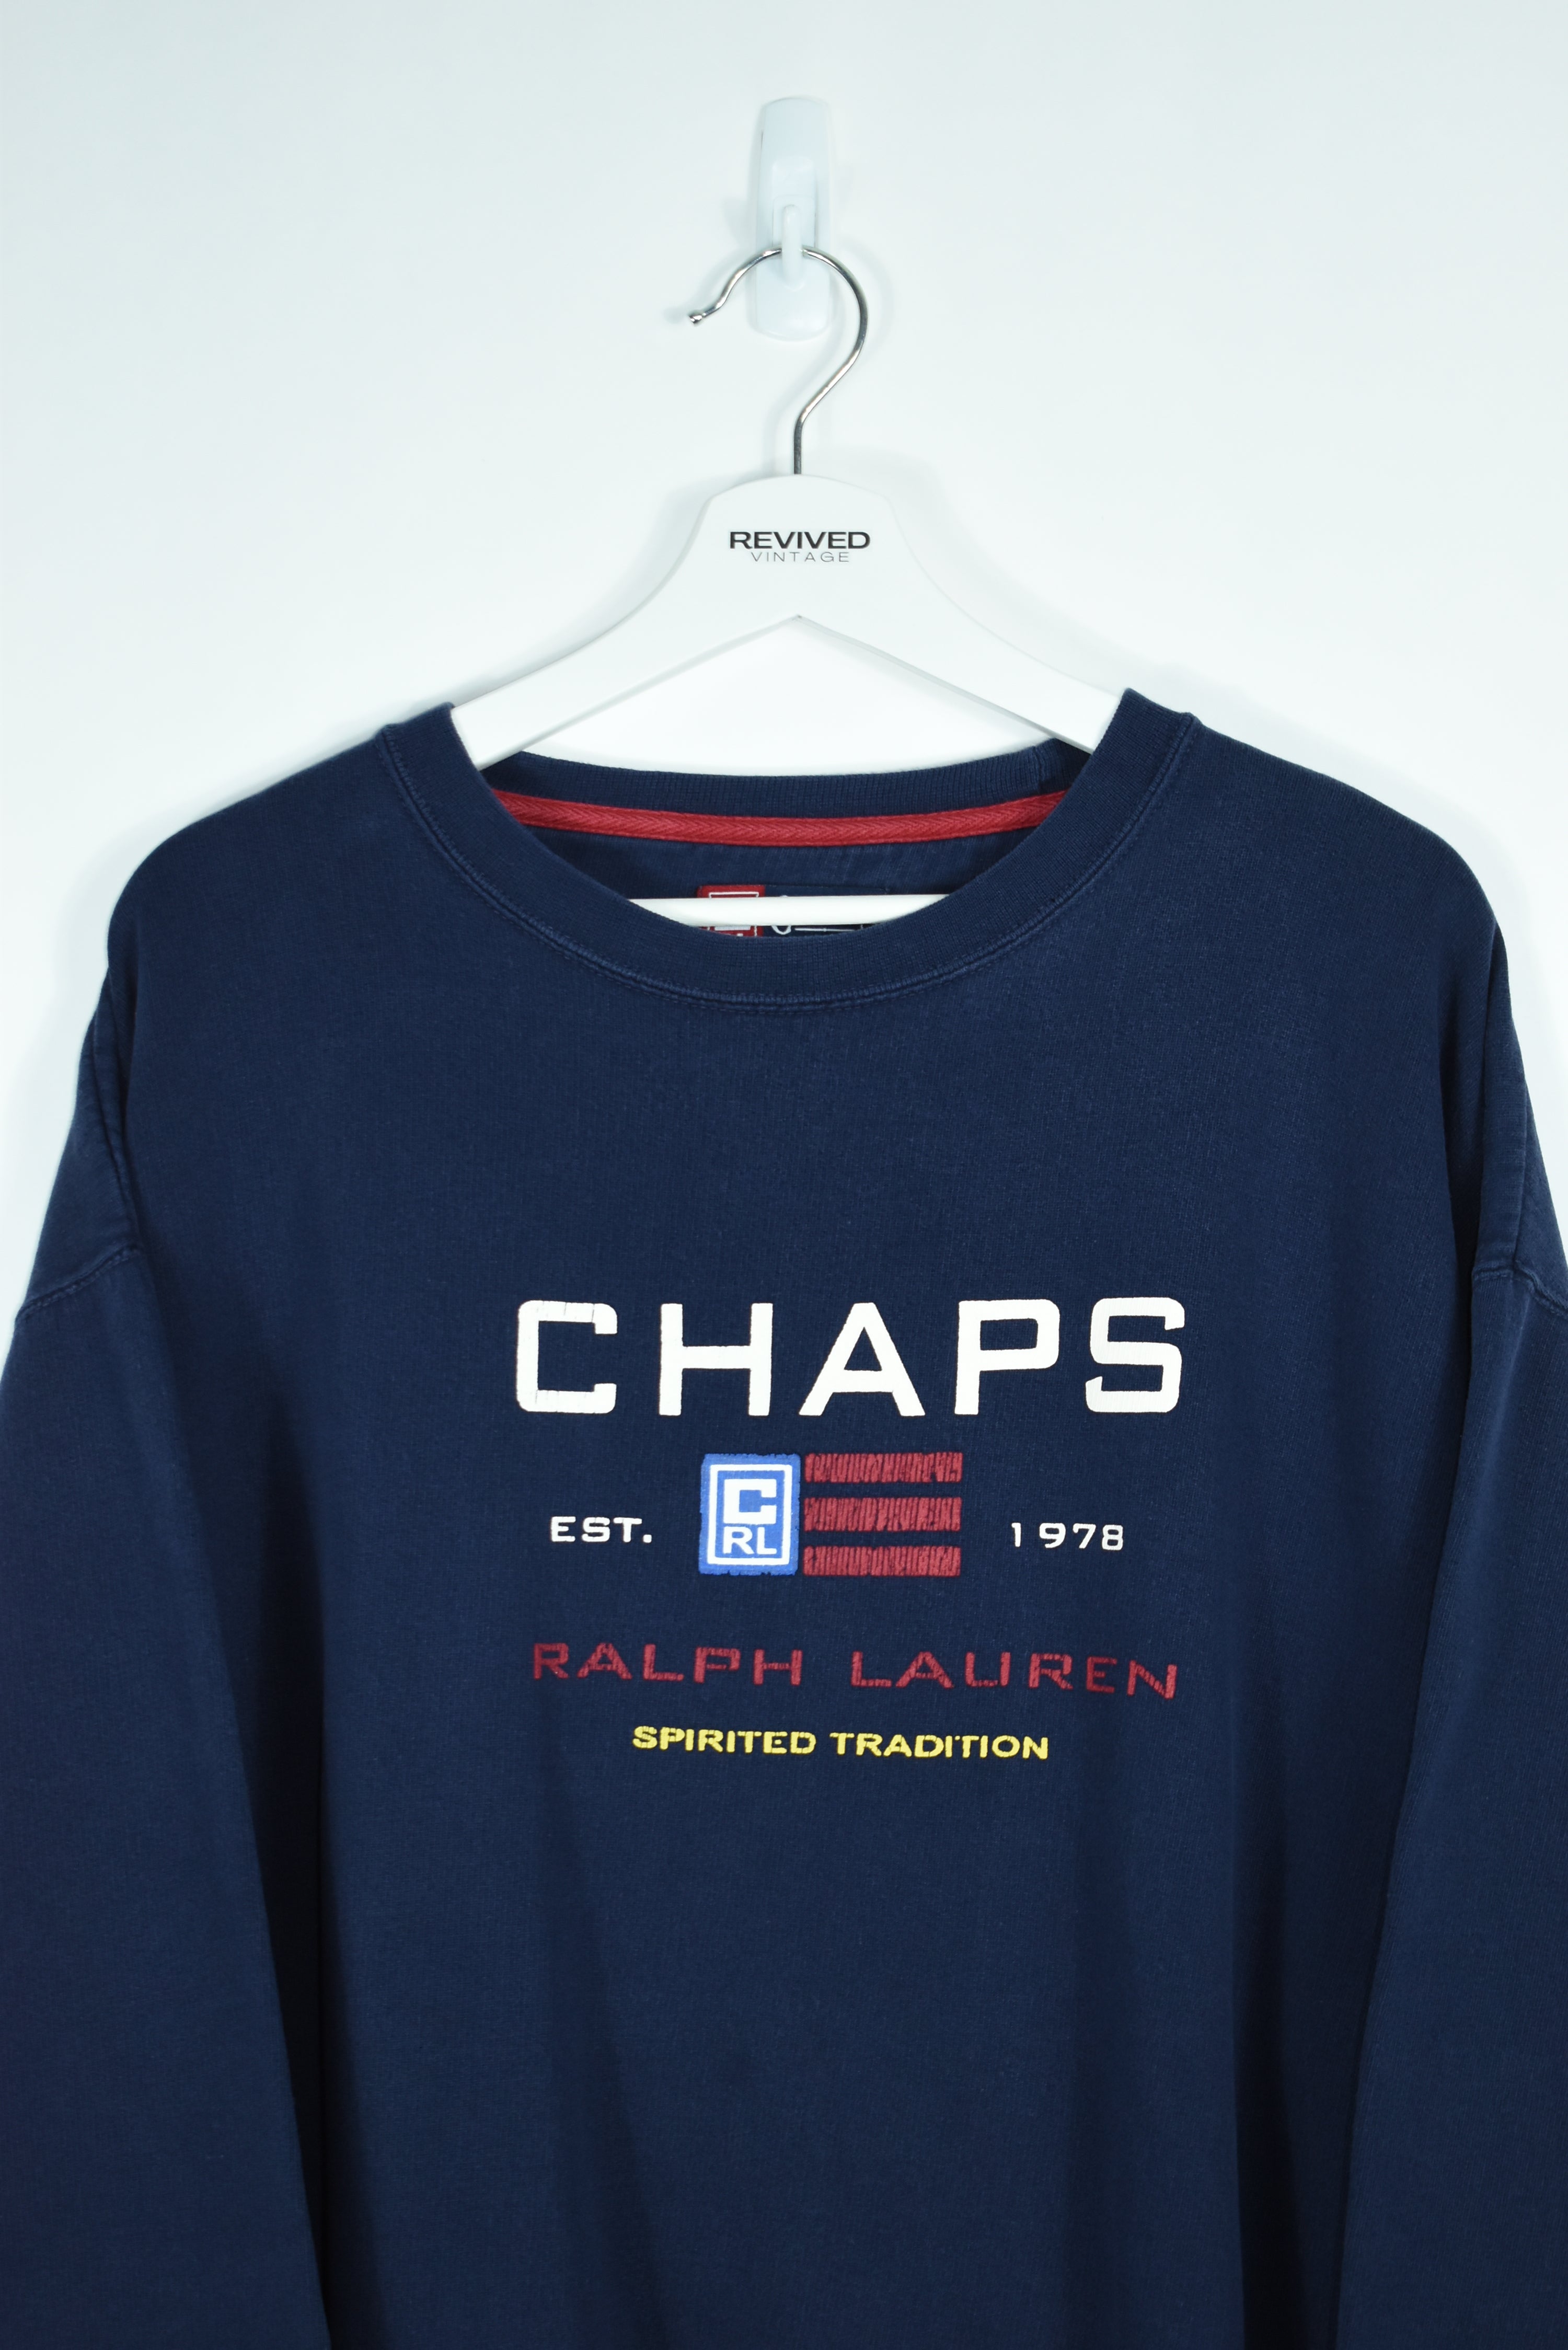 Vintage Chaps Ralph Lauren Sweatshirt Xlarge